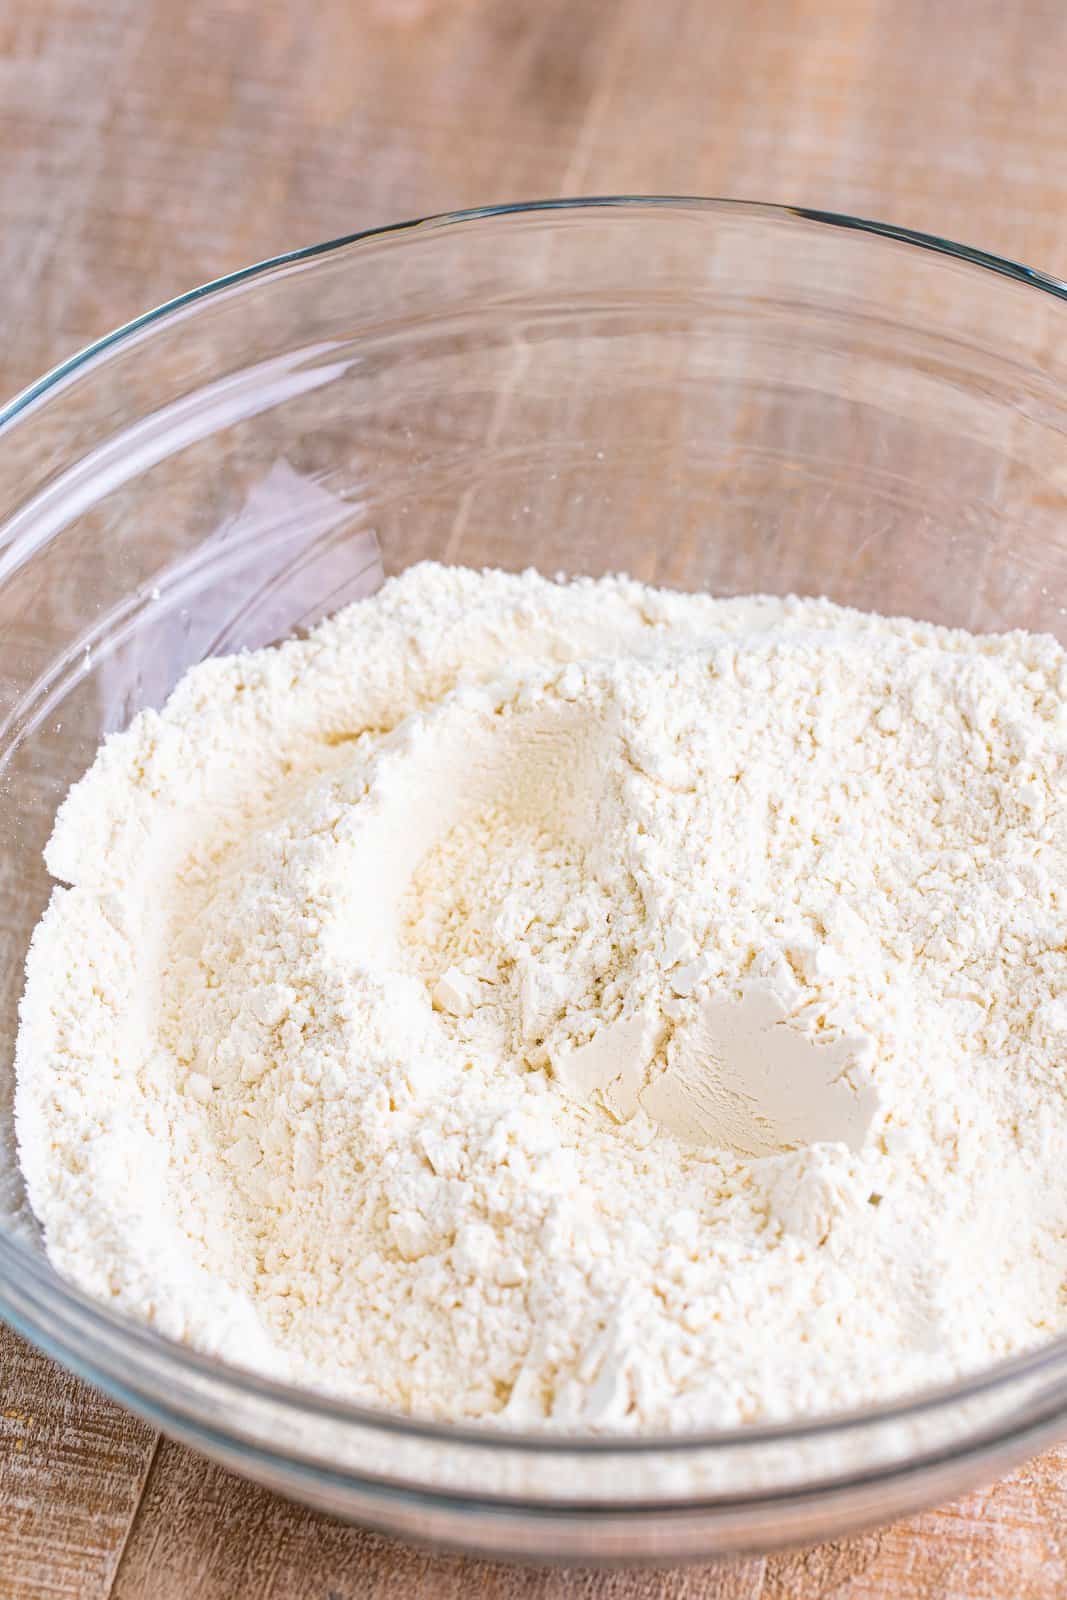 A bowl of flour, sugar, baking powder, and dried ranch seasoning.